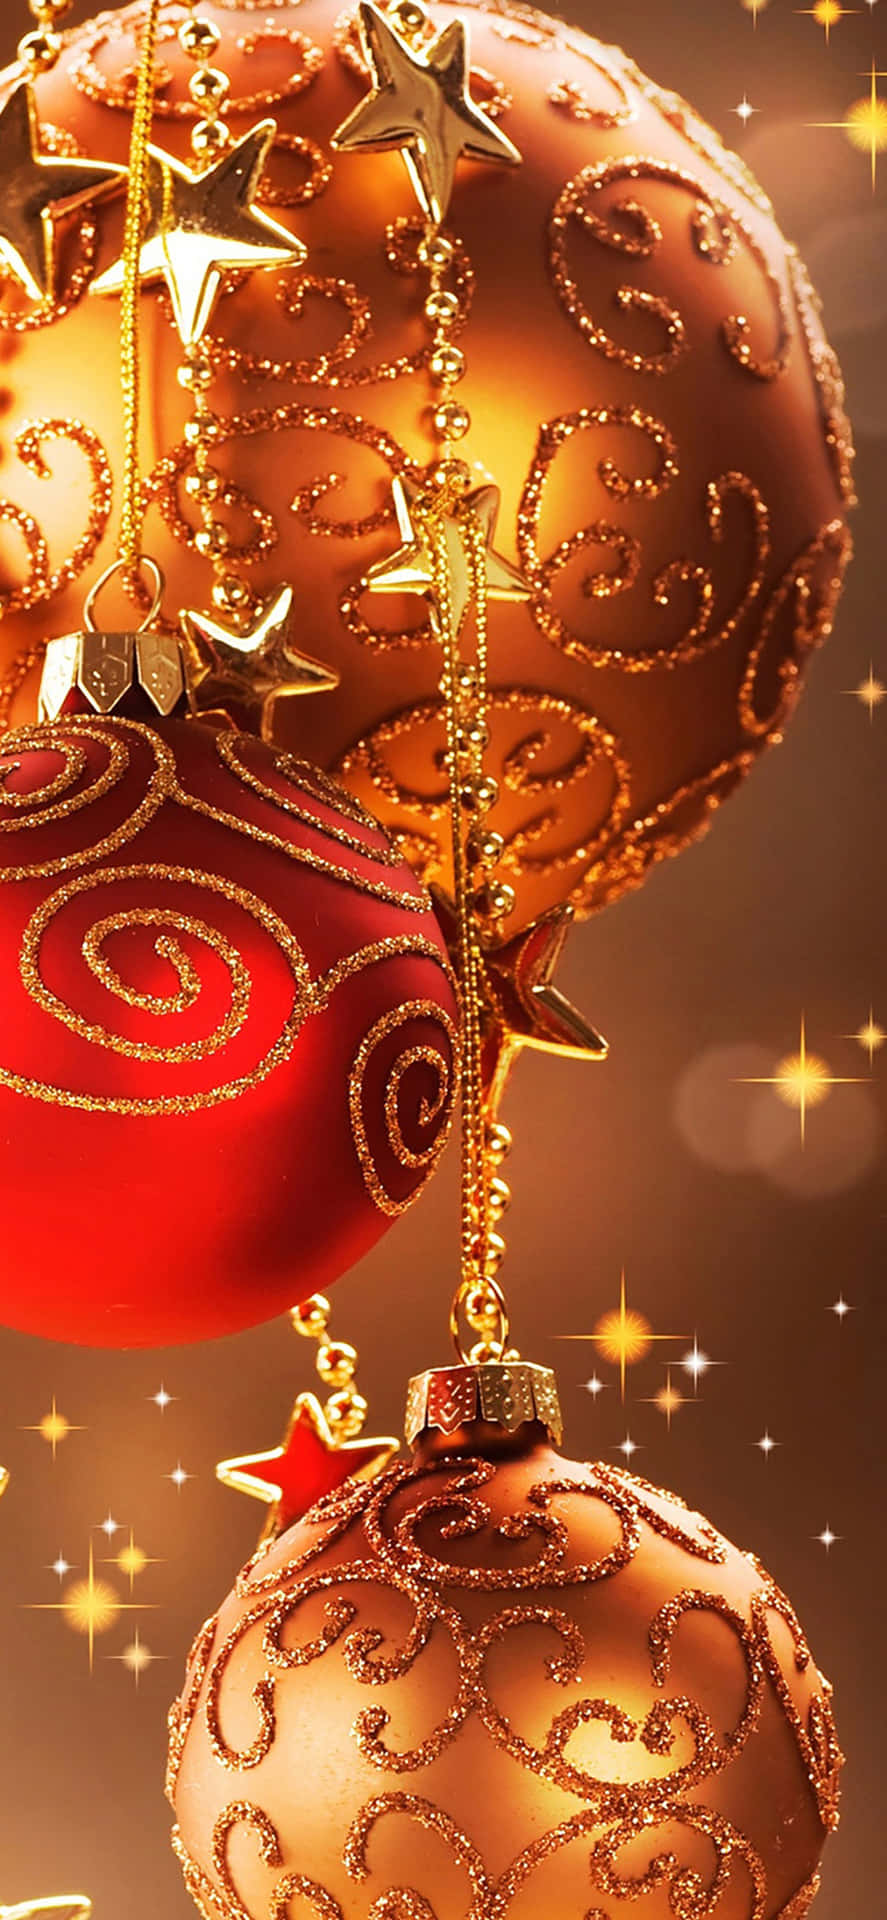 Weihnachtsverzierungenmit Sternen Und Goldenen Ornamenten Wallpaper